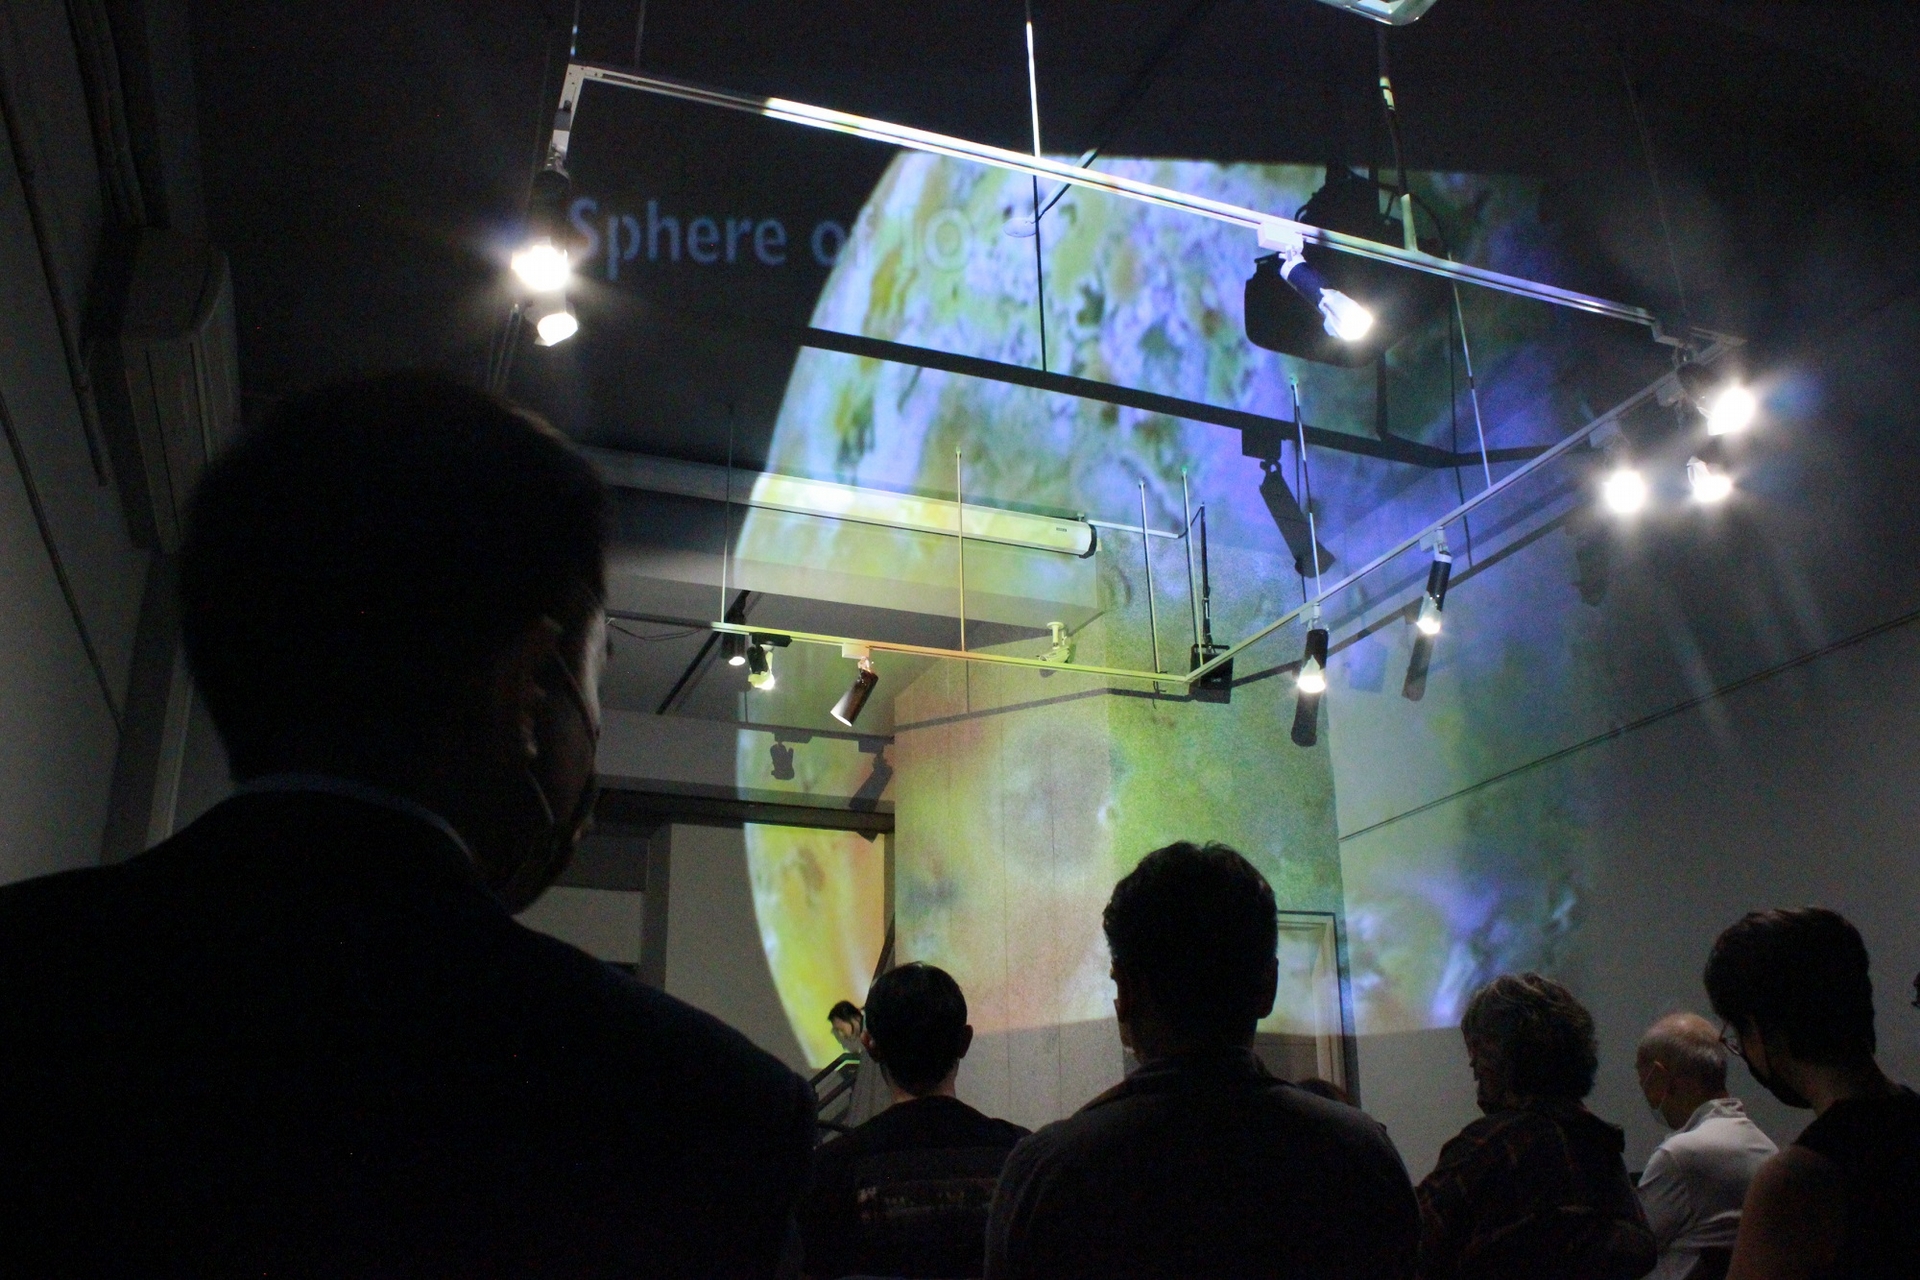 2022大稻埕國際藝術節「重置之夜」表演，在ViewSonic投影科技輔助下，模擬出回歸寂靜的宇宙，讓觀賞者享受創新文化實驗表演。